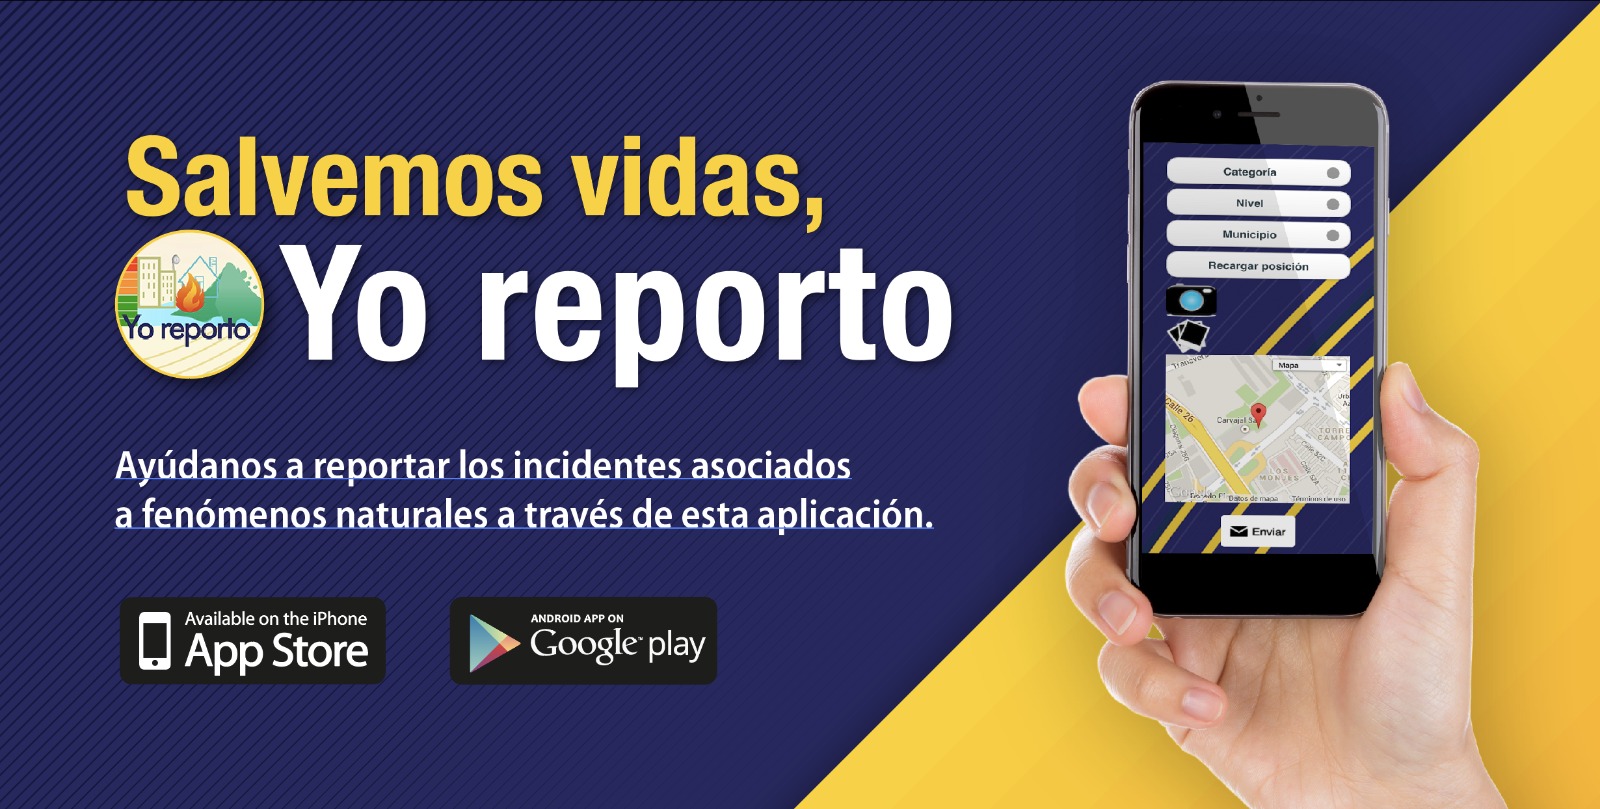 Unidad Nacional para la Gestión del Riesgo lanzó aplicación móvil para reportar emergencias